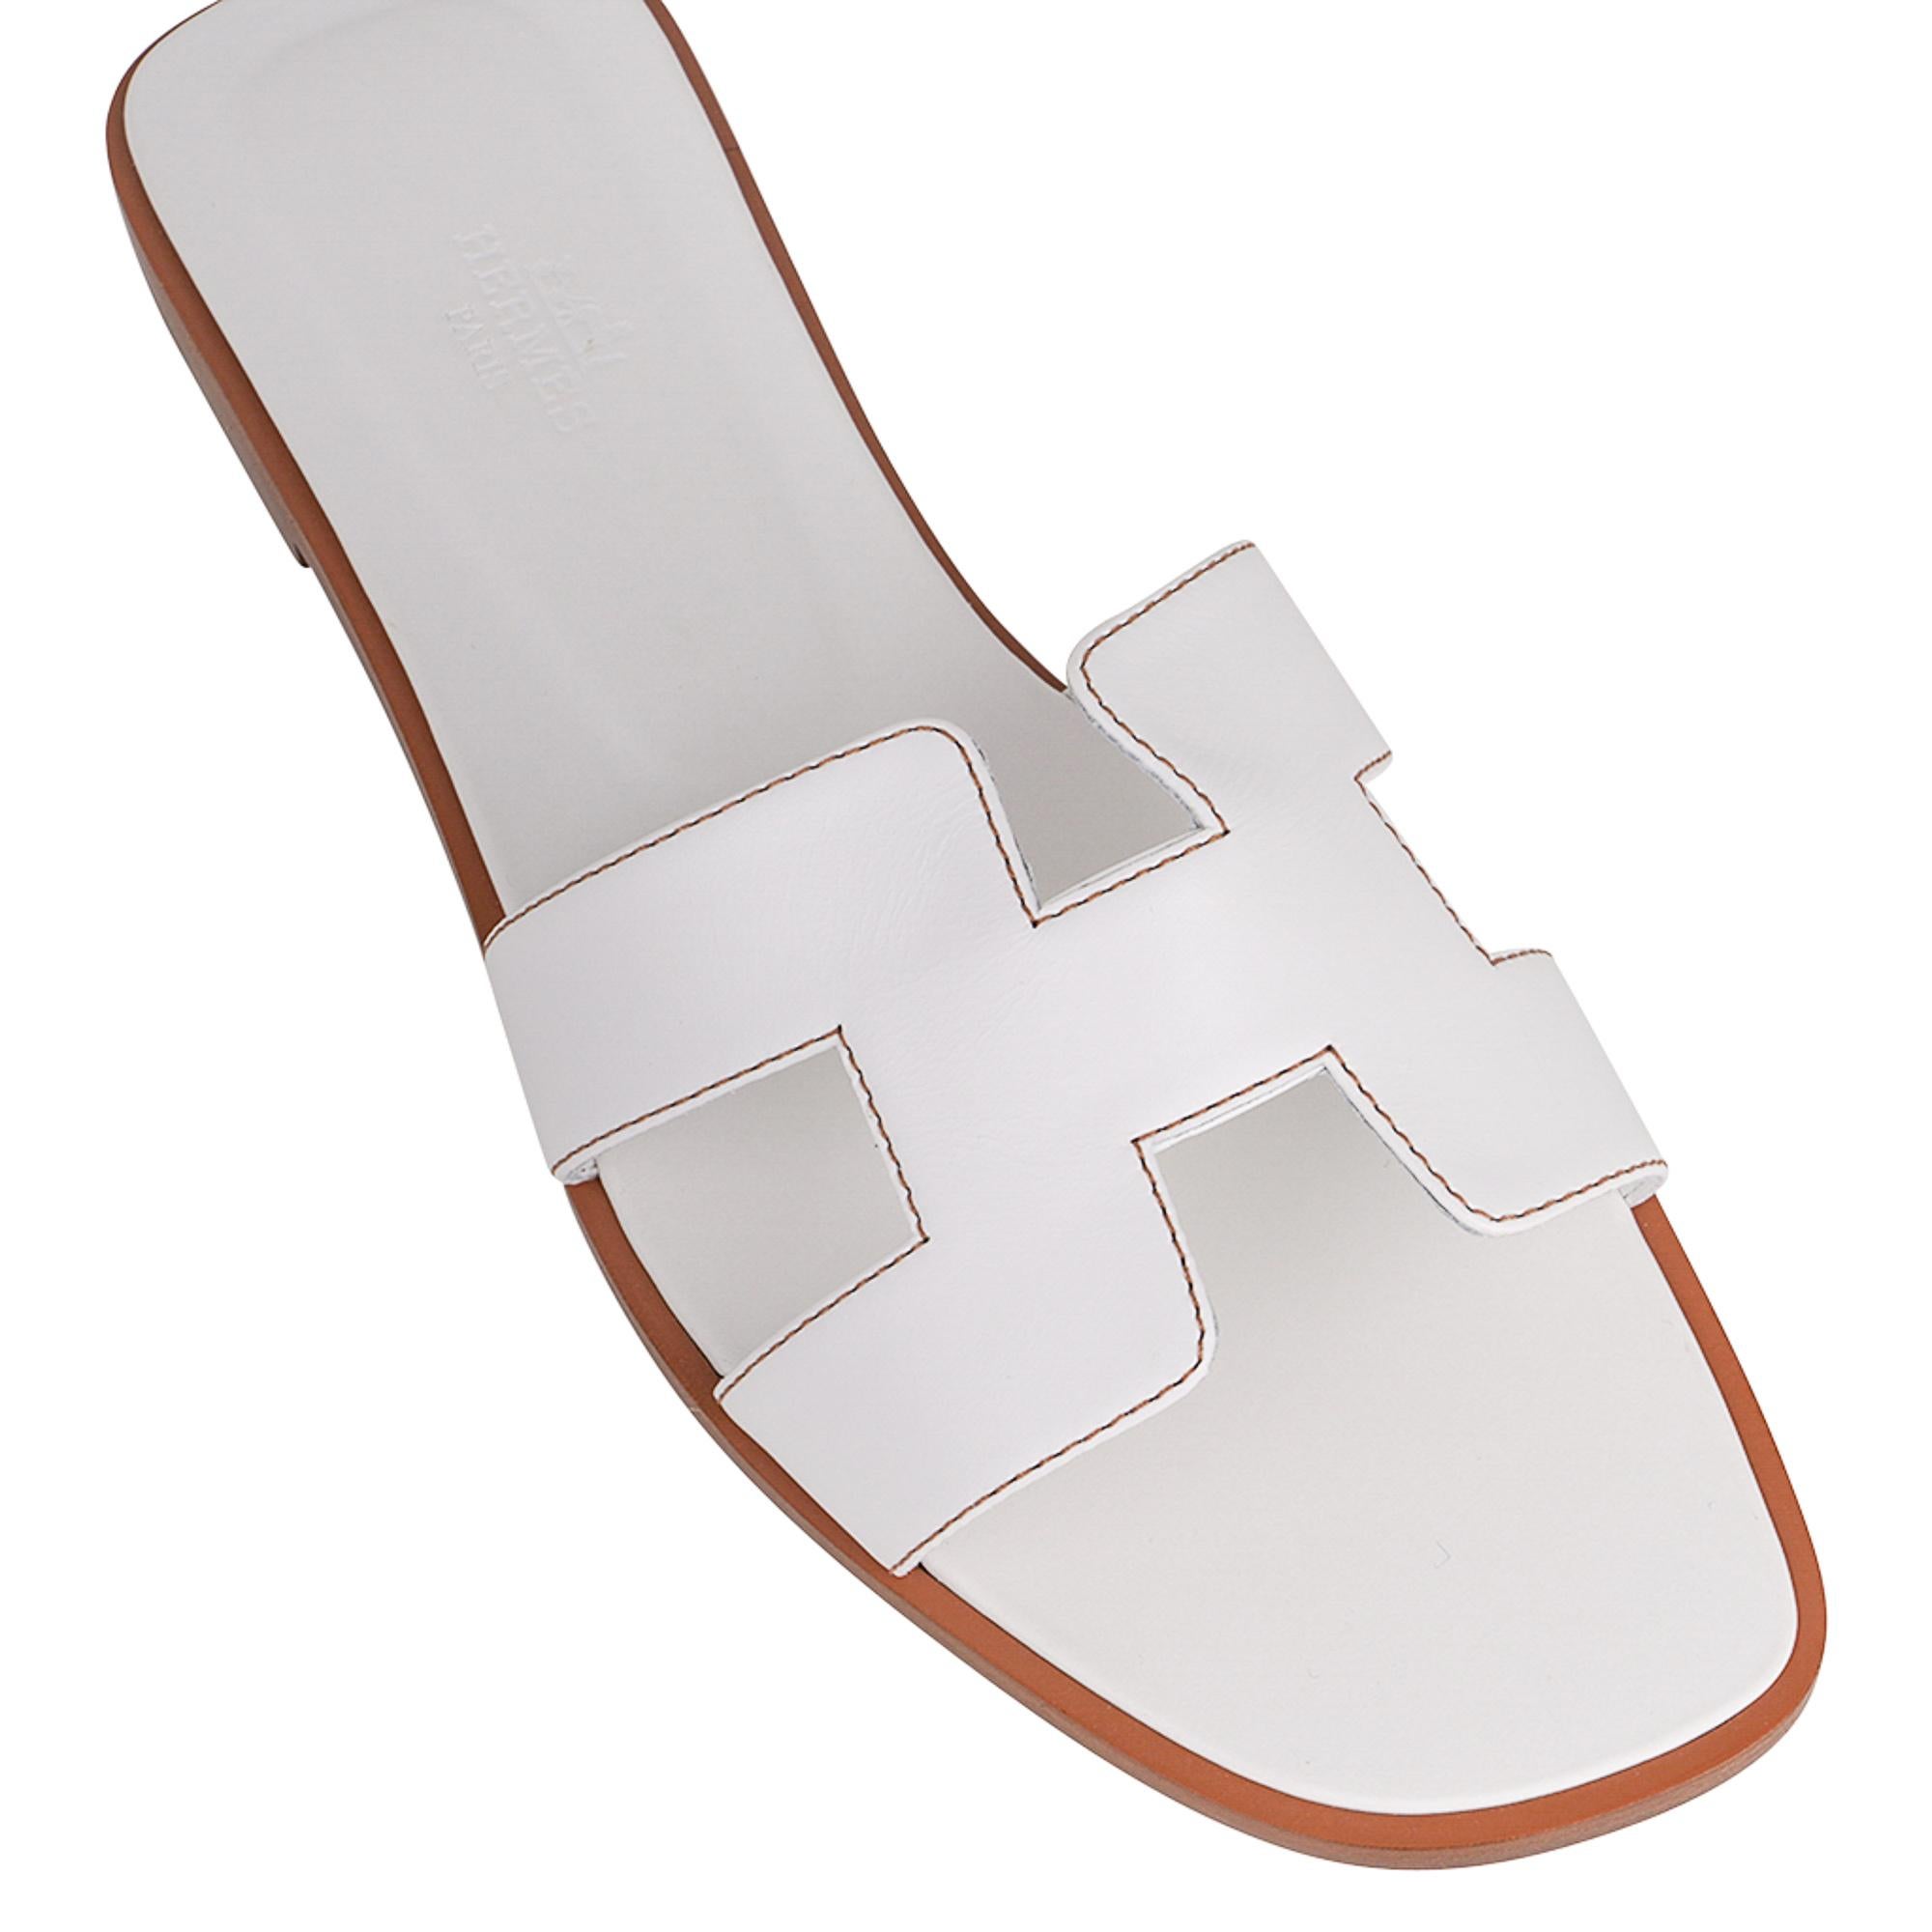 Mightychic bietet eine ikonische Hermes Oran Sandale in Weiß mit Havane Steppnaht.
Die charakteristische H-Aussparung über dem Fußrücken aus edlem Kalbsleder.
Weiße Innensohle aus geprägtem Kalbsleder. 
Holzabsatz mit Ledersohle. 
Kommt mit